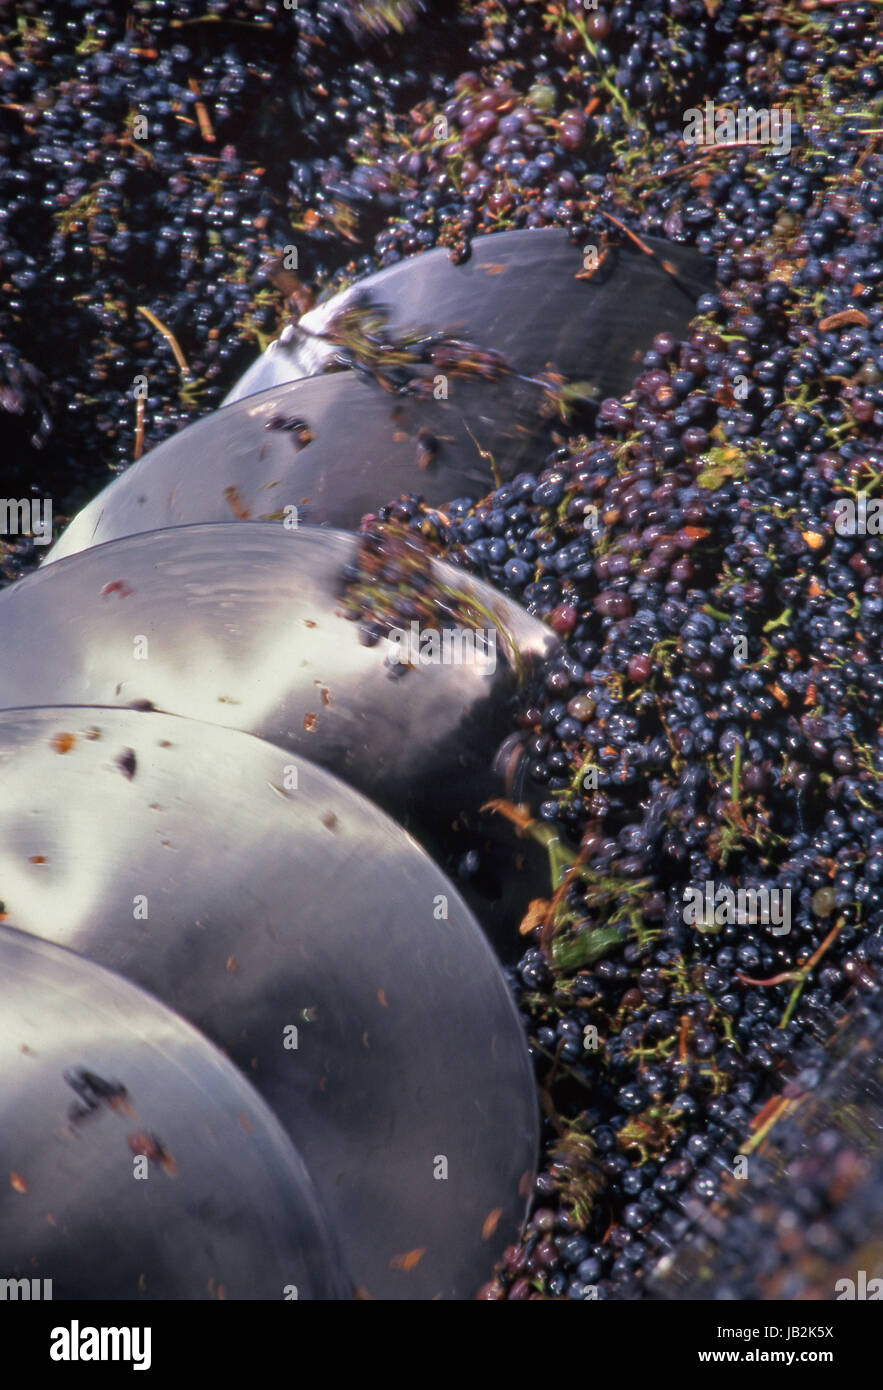 NAPA VALLEY RACCOLTO Pinot Nero uve schiacciate da acciaio inox archimedes coclea tramoggia Charles Krug cantina, St Helena, Napa Valley California Stati Uniti d'America Foto Stock